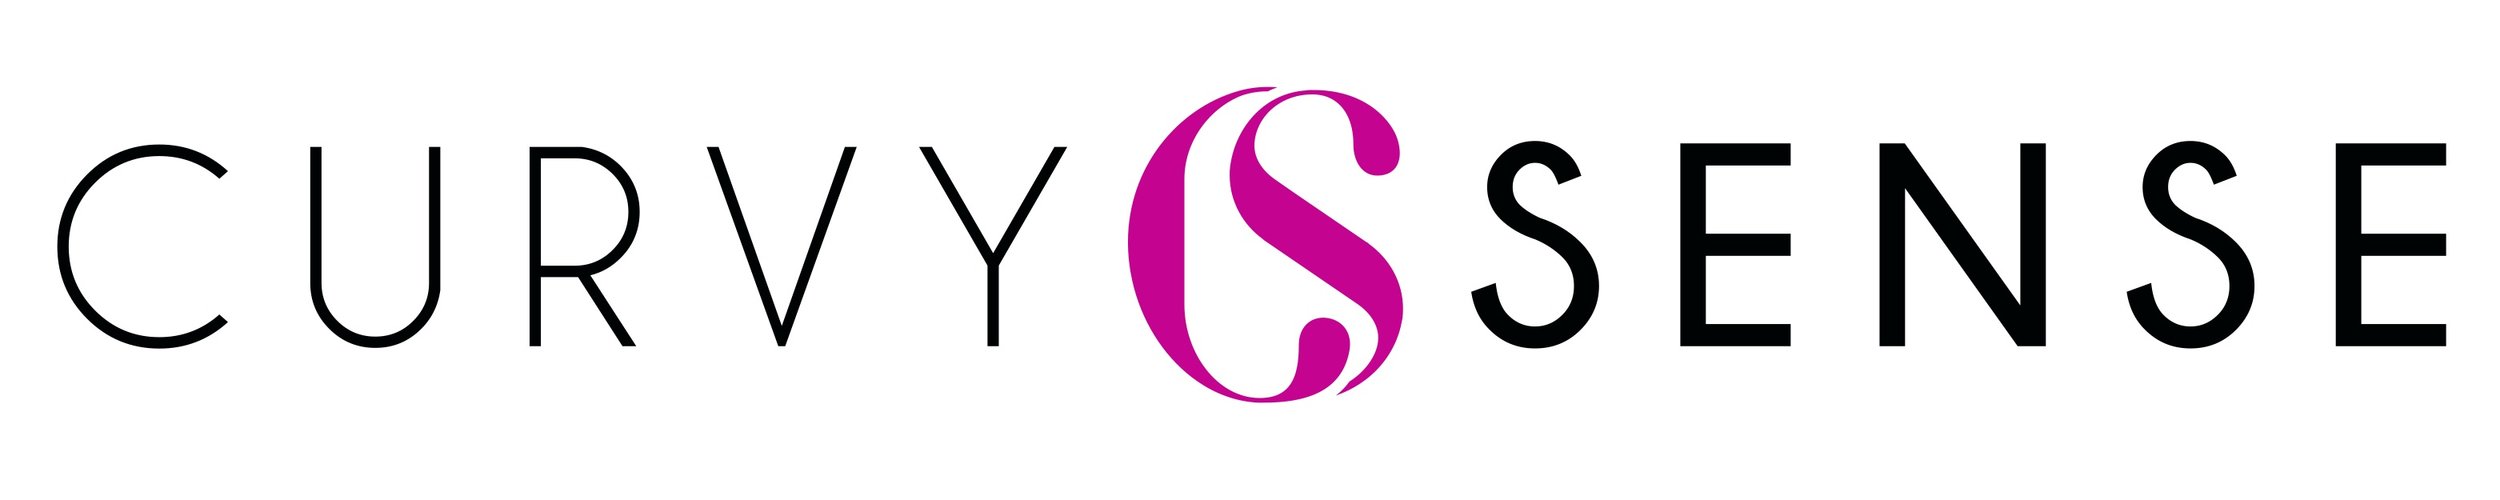 Curvy-Sense-Logo.jpg